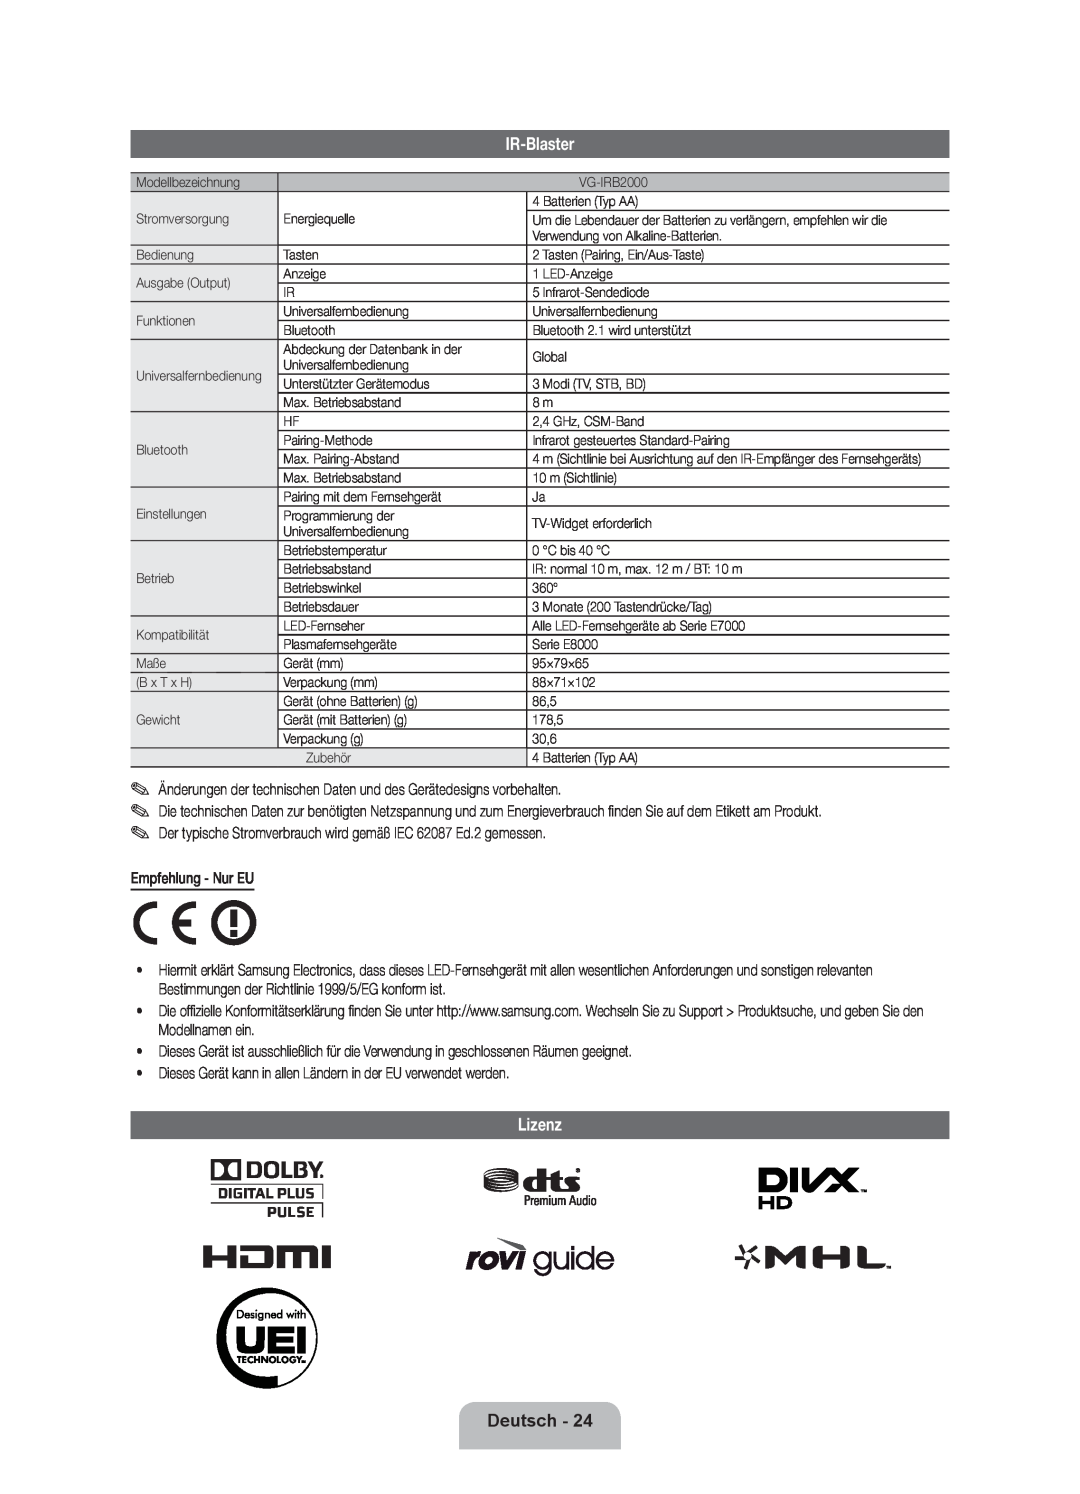 Samsung UE55ES7000SXXH IR-Blaster, Lizenz, Deutsch, Änderungen der technischen Daten und des Gerätedesigns vorbehalten 